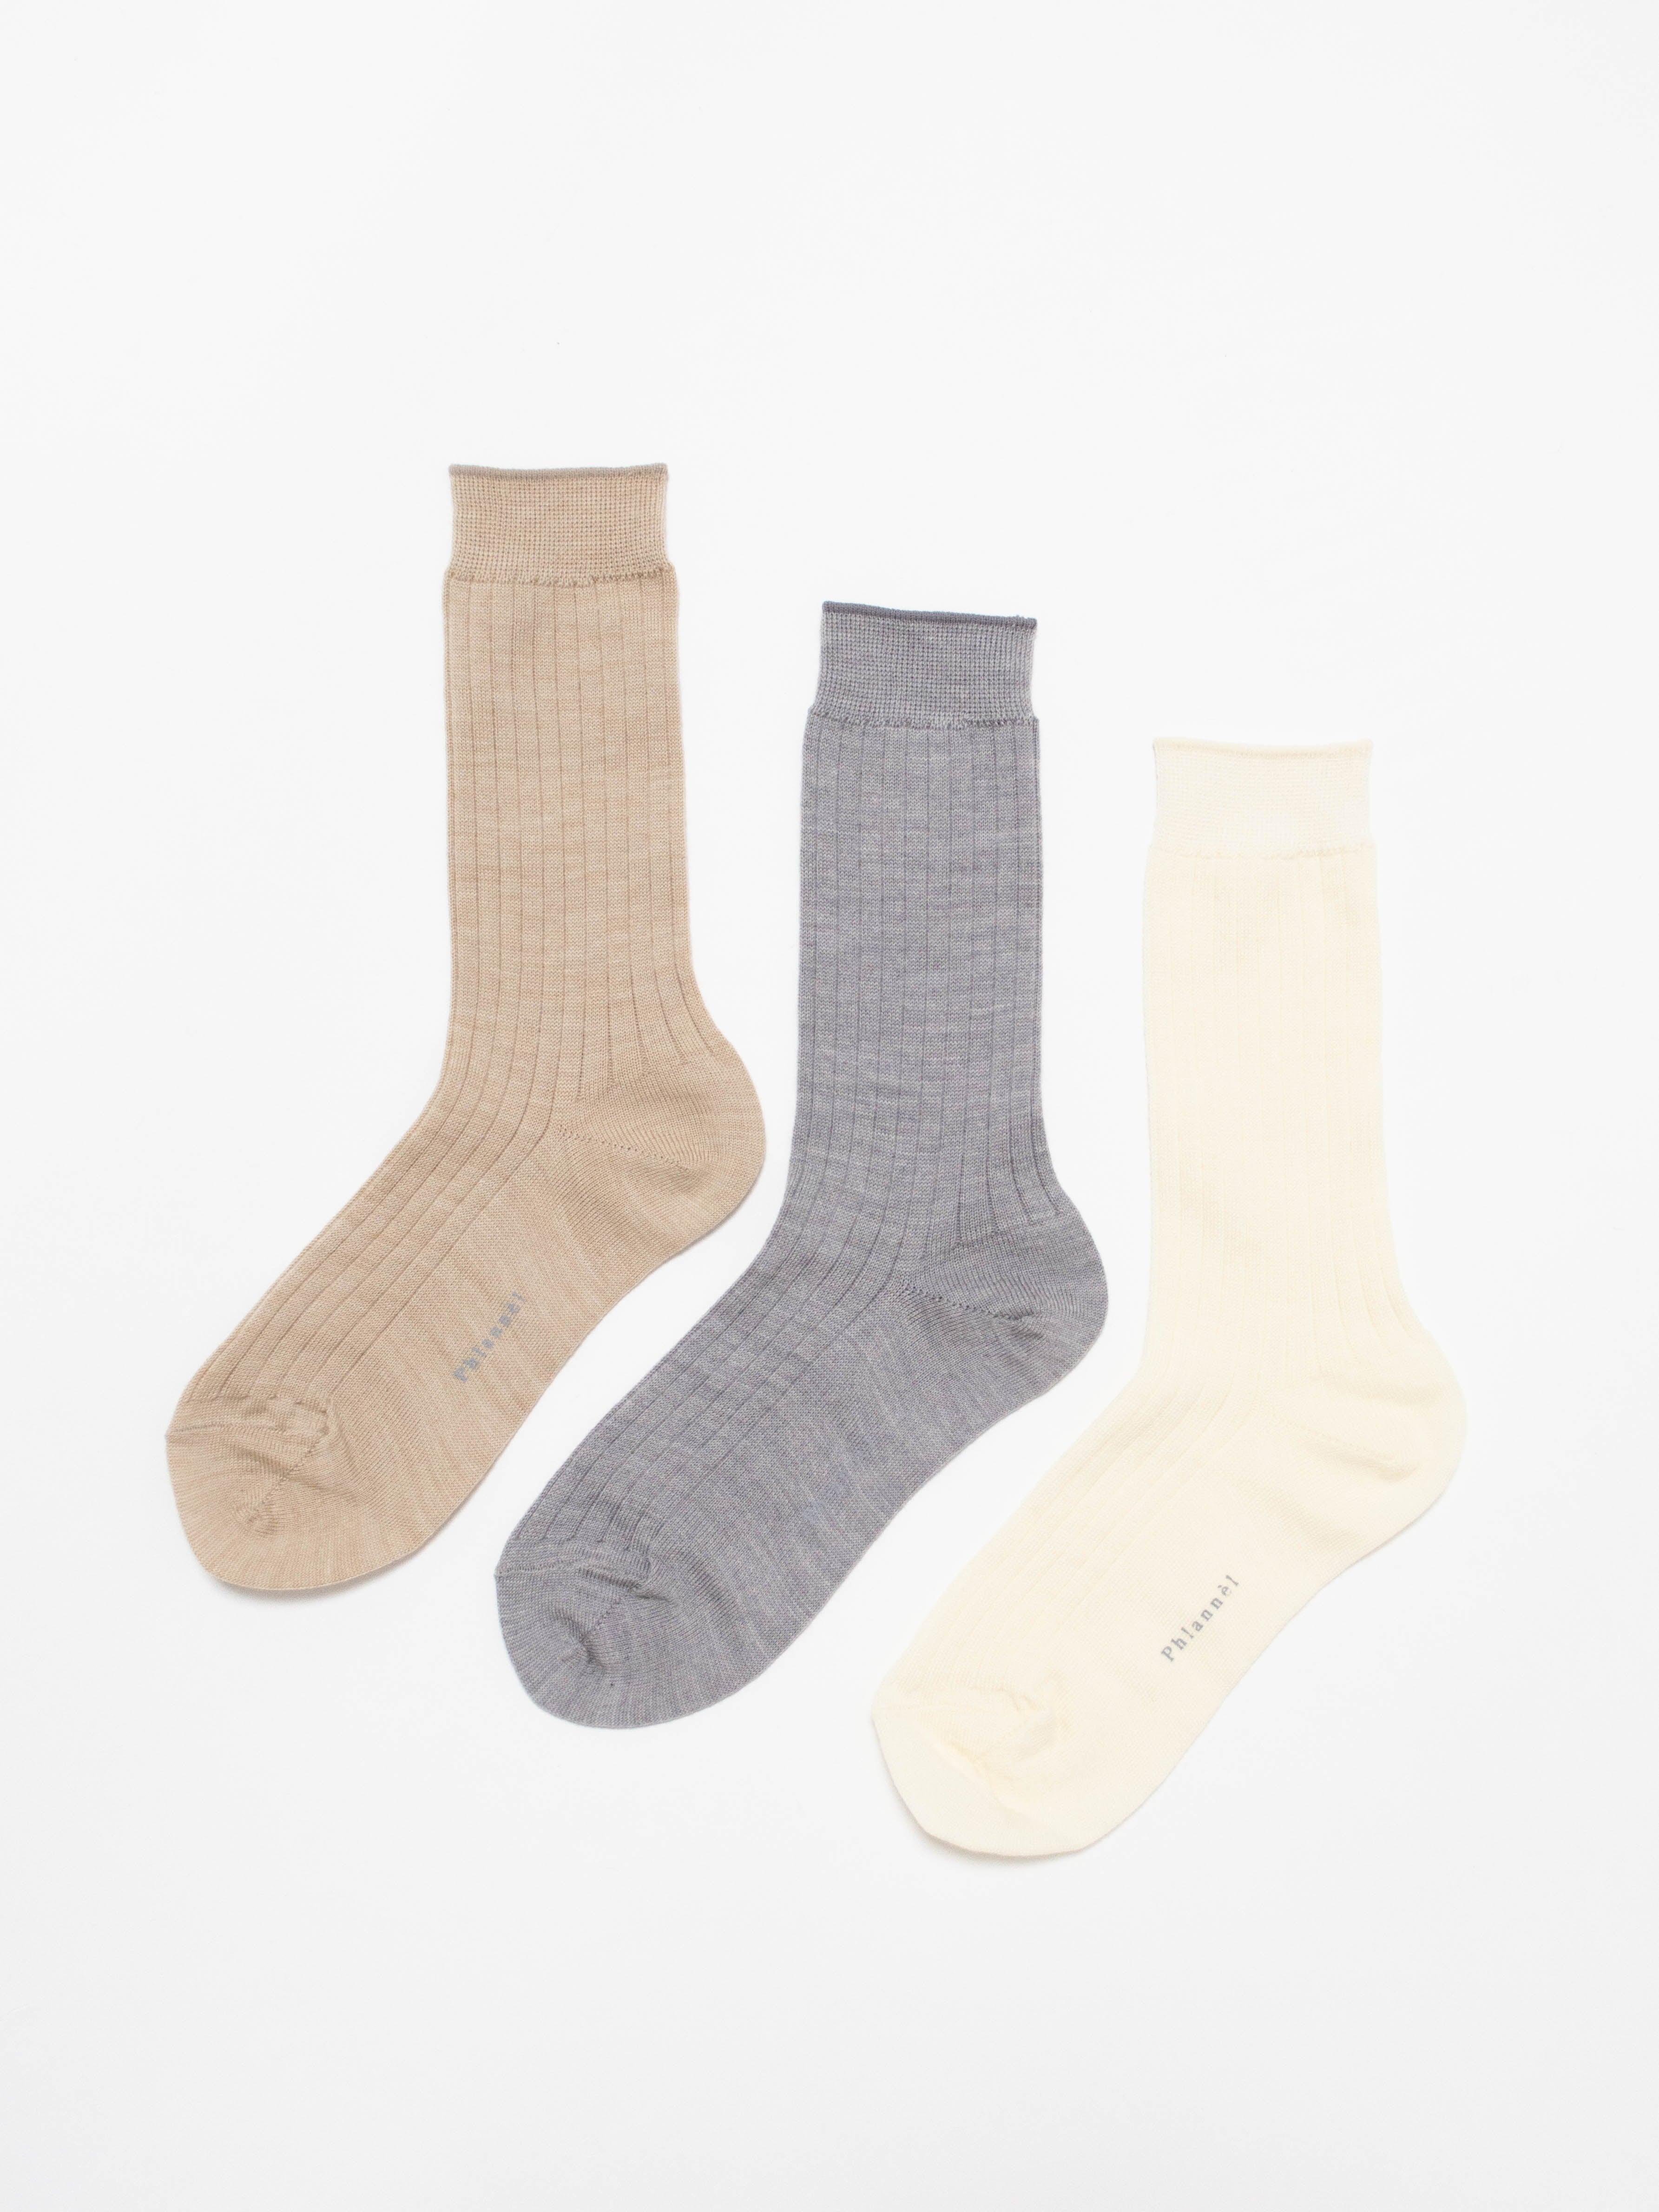 Namu Shop - Phlannel Women's 3-Pack Wool Socks (Gray, Ivory, Beige)